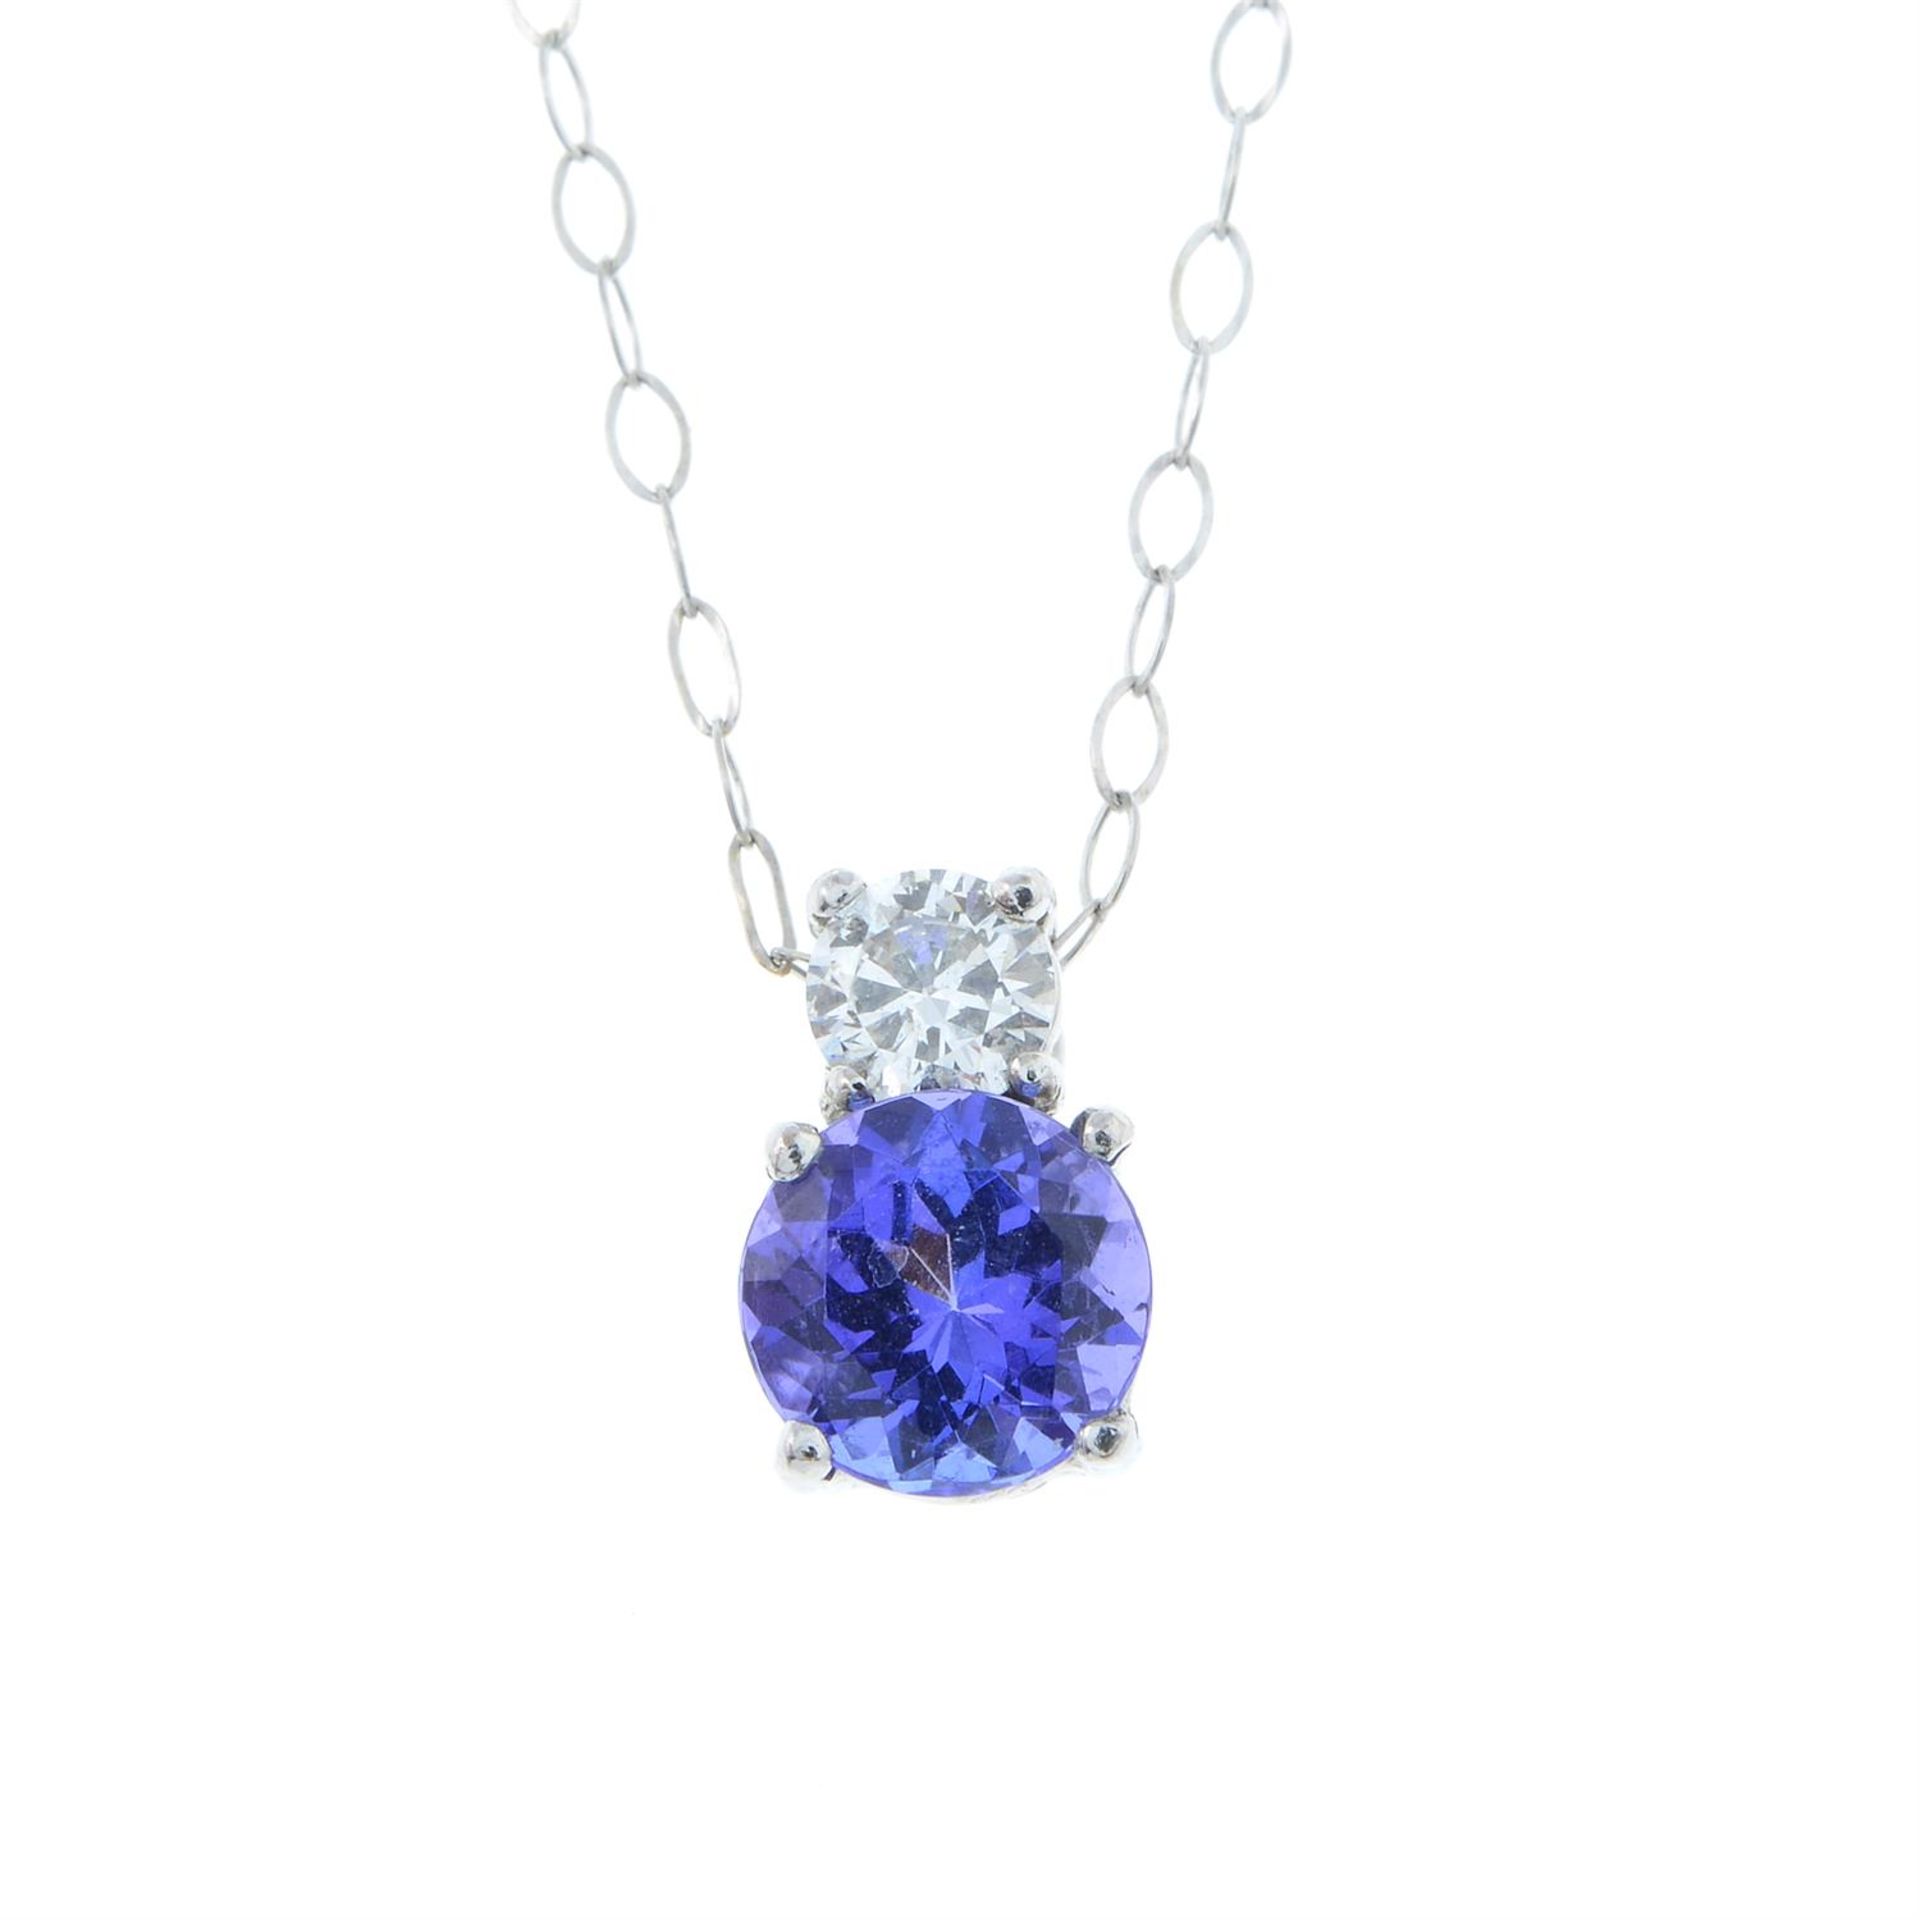 A tanzanite and brilliant-cut diamond pendant with chain.